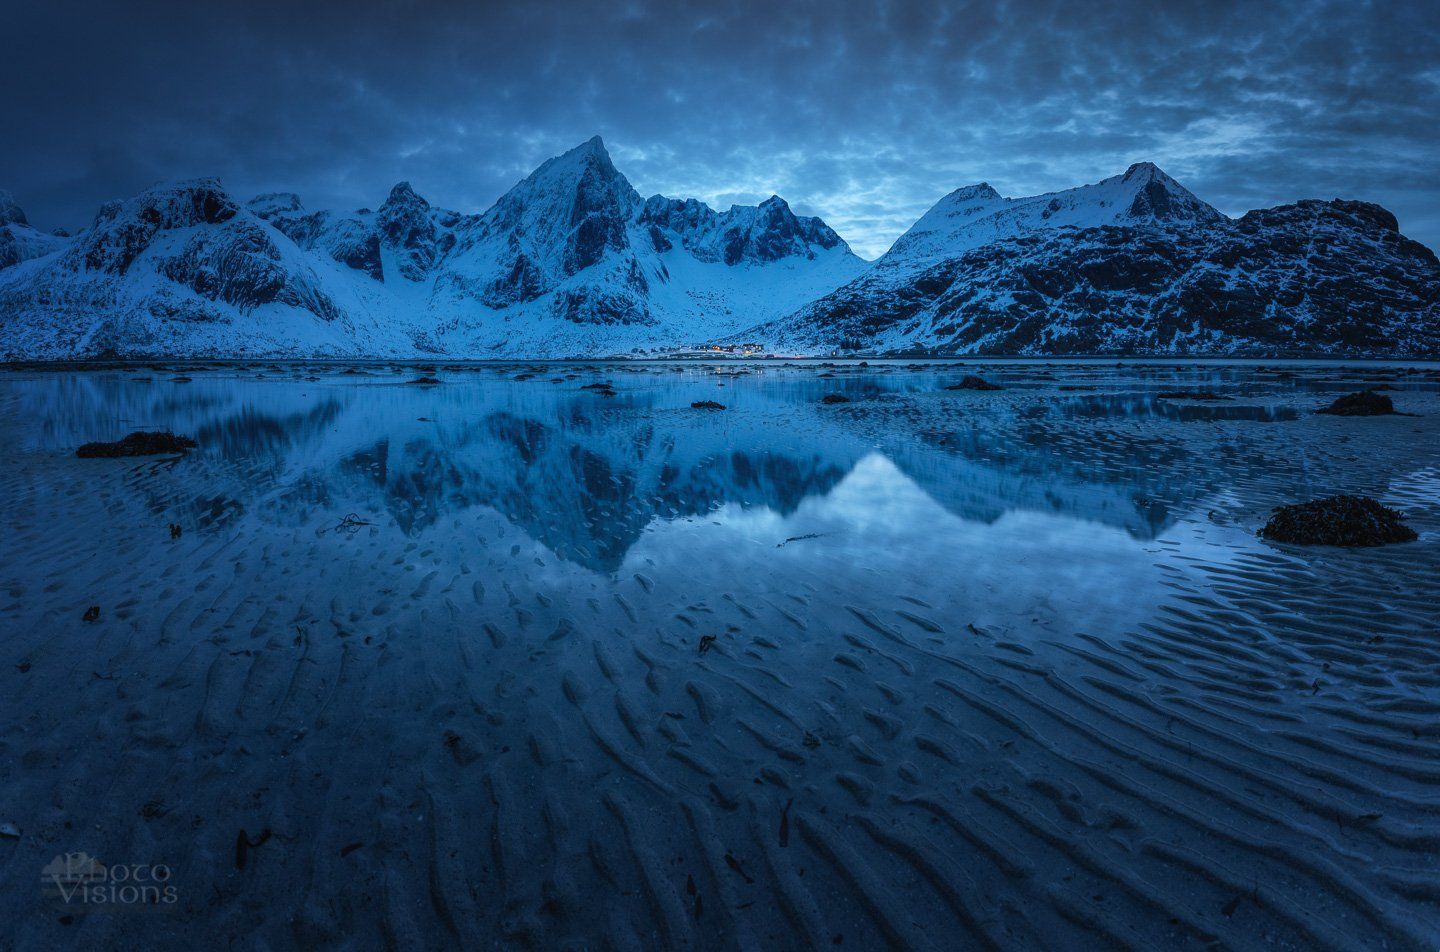 lofoten,flakstadpollen,blue hour,mountains,winter,reflections,, Adrian Szatewicz